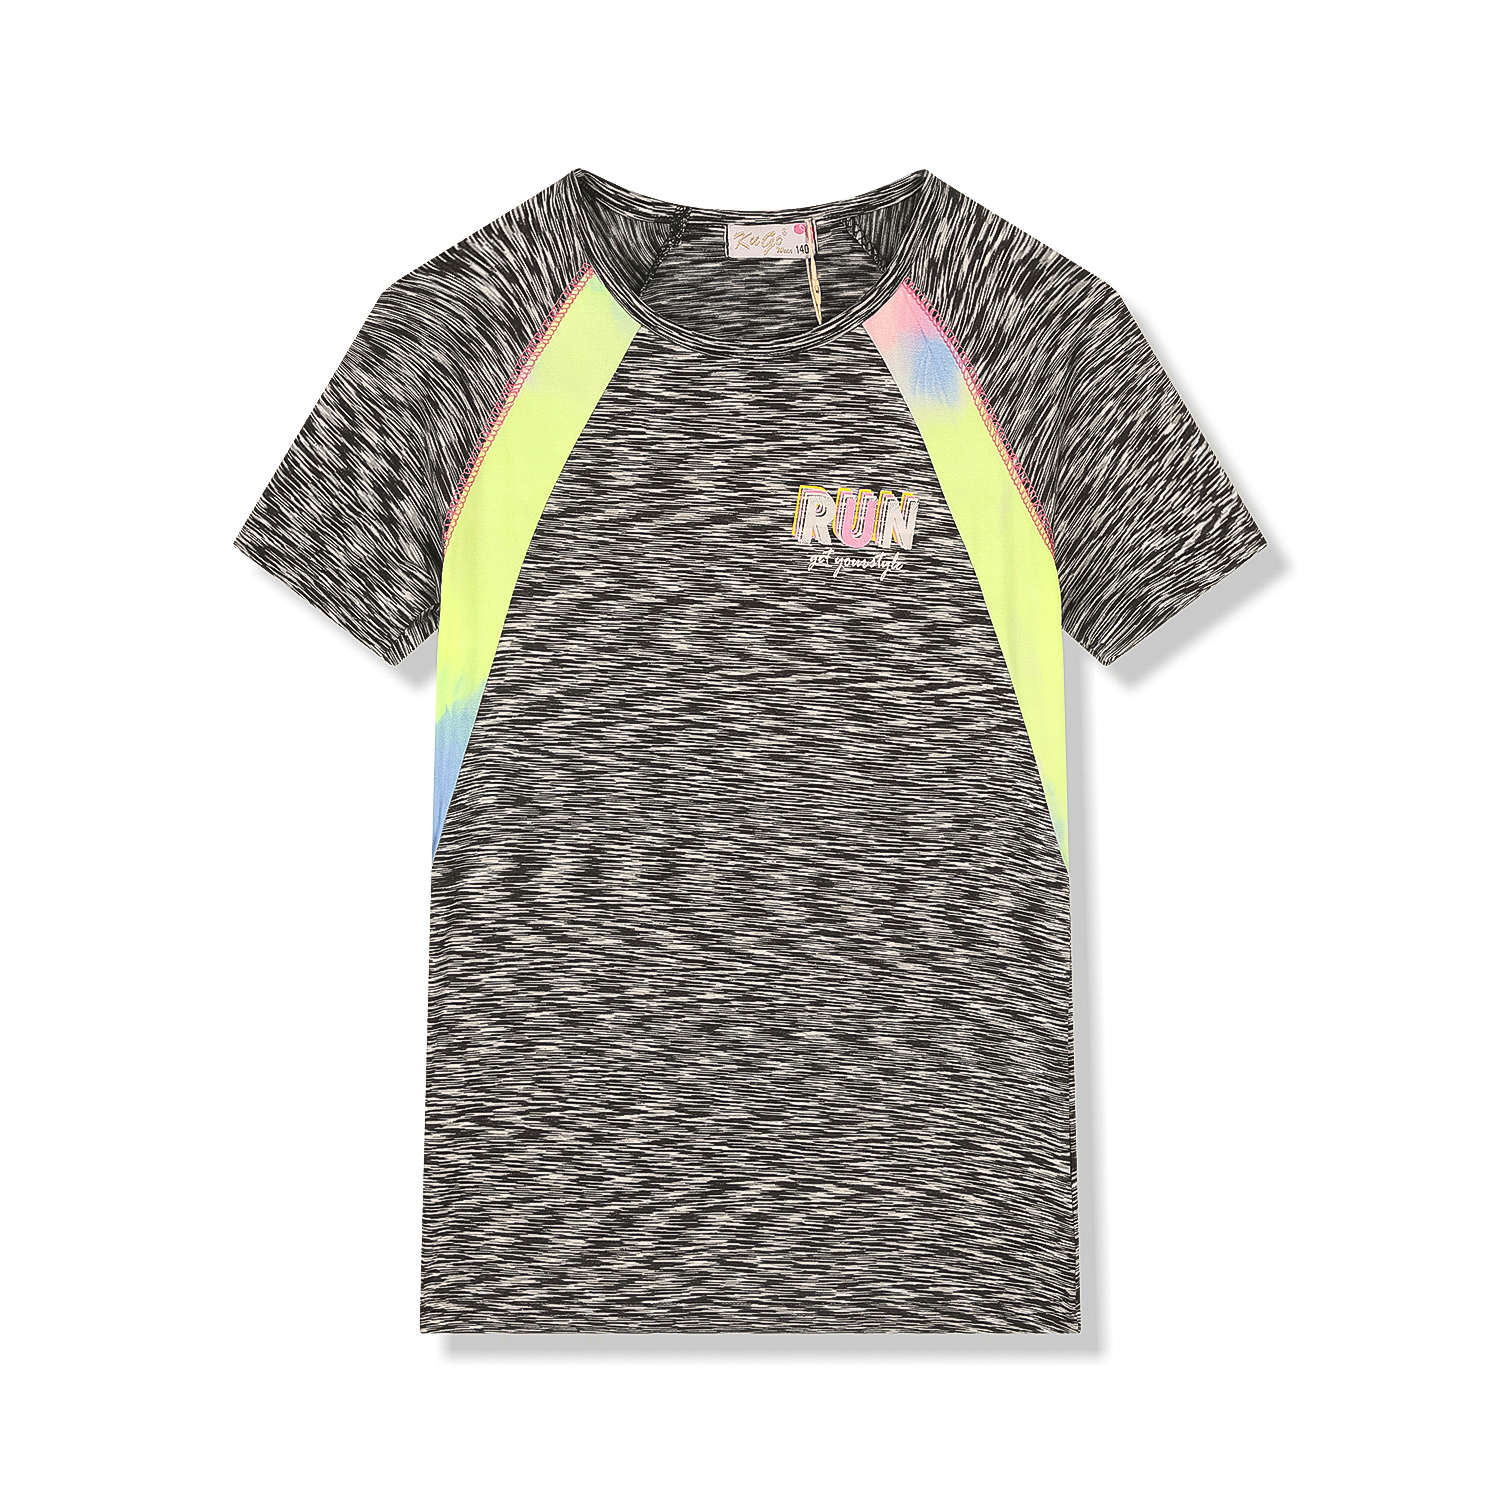 Dívčí funkční tričko - KUGO FC6756, šedočerná Barva: Černá, Velikost: 140